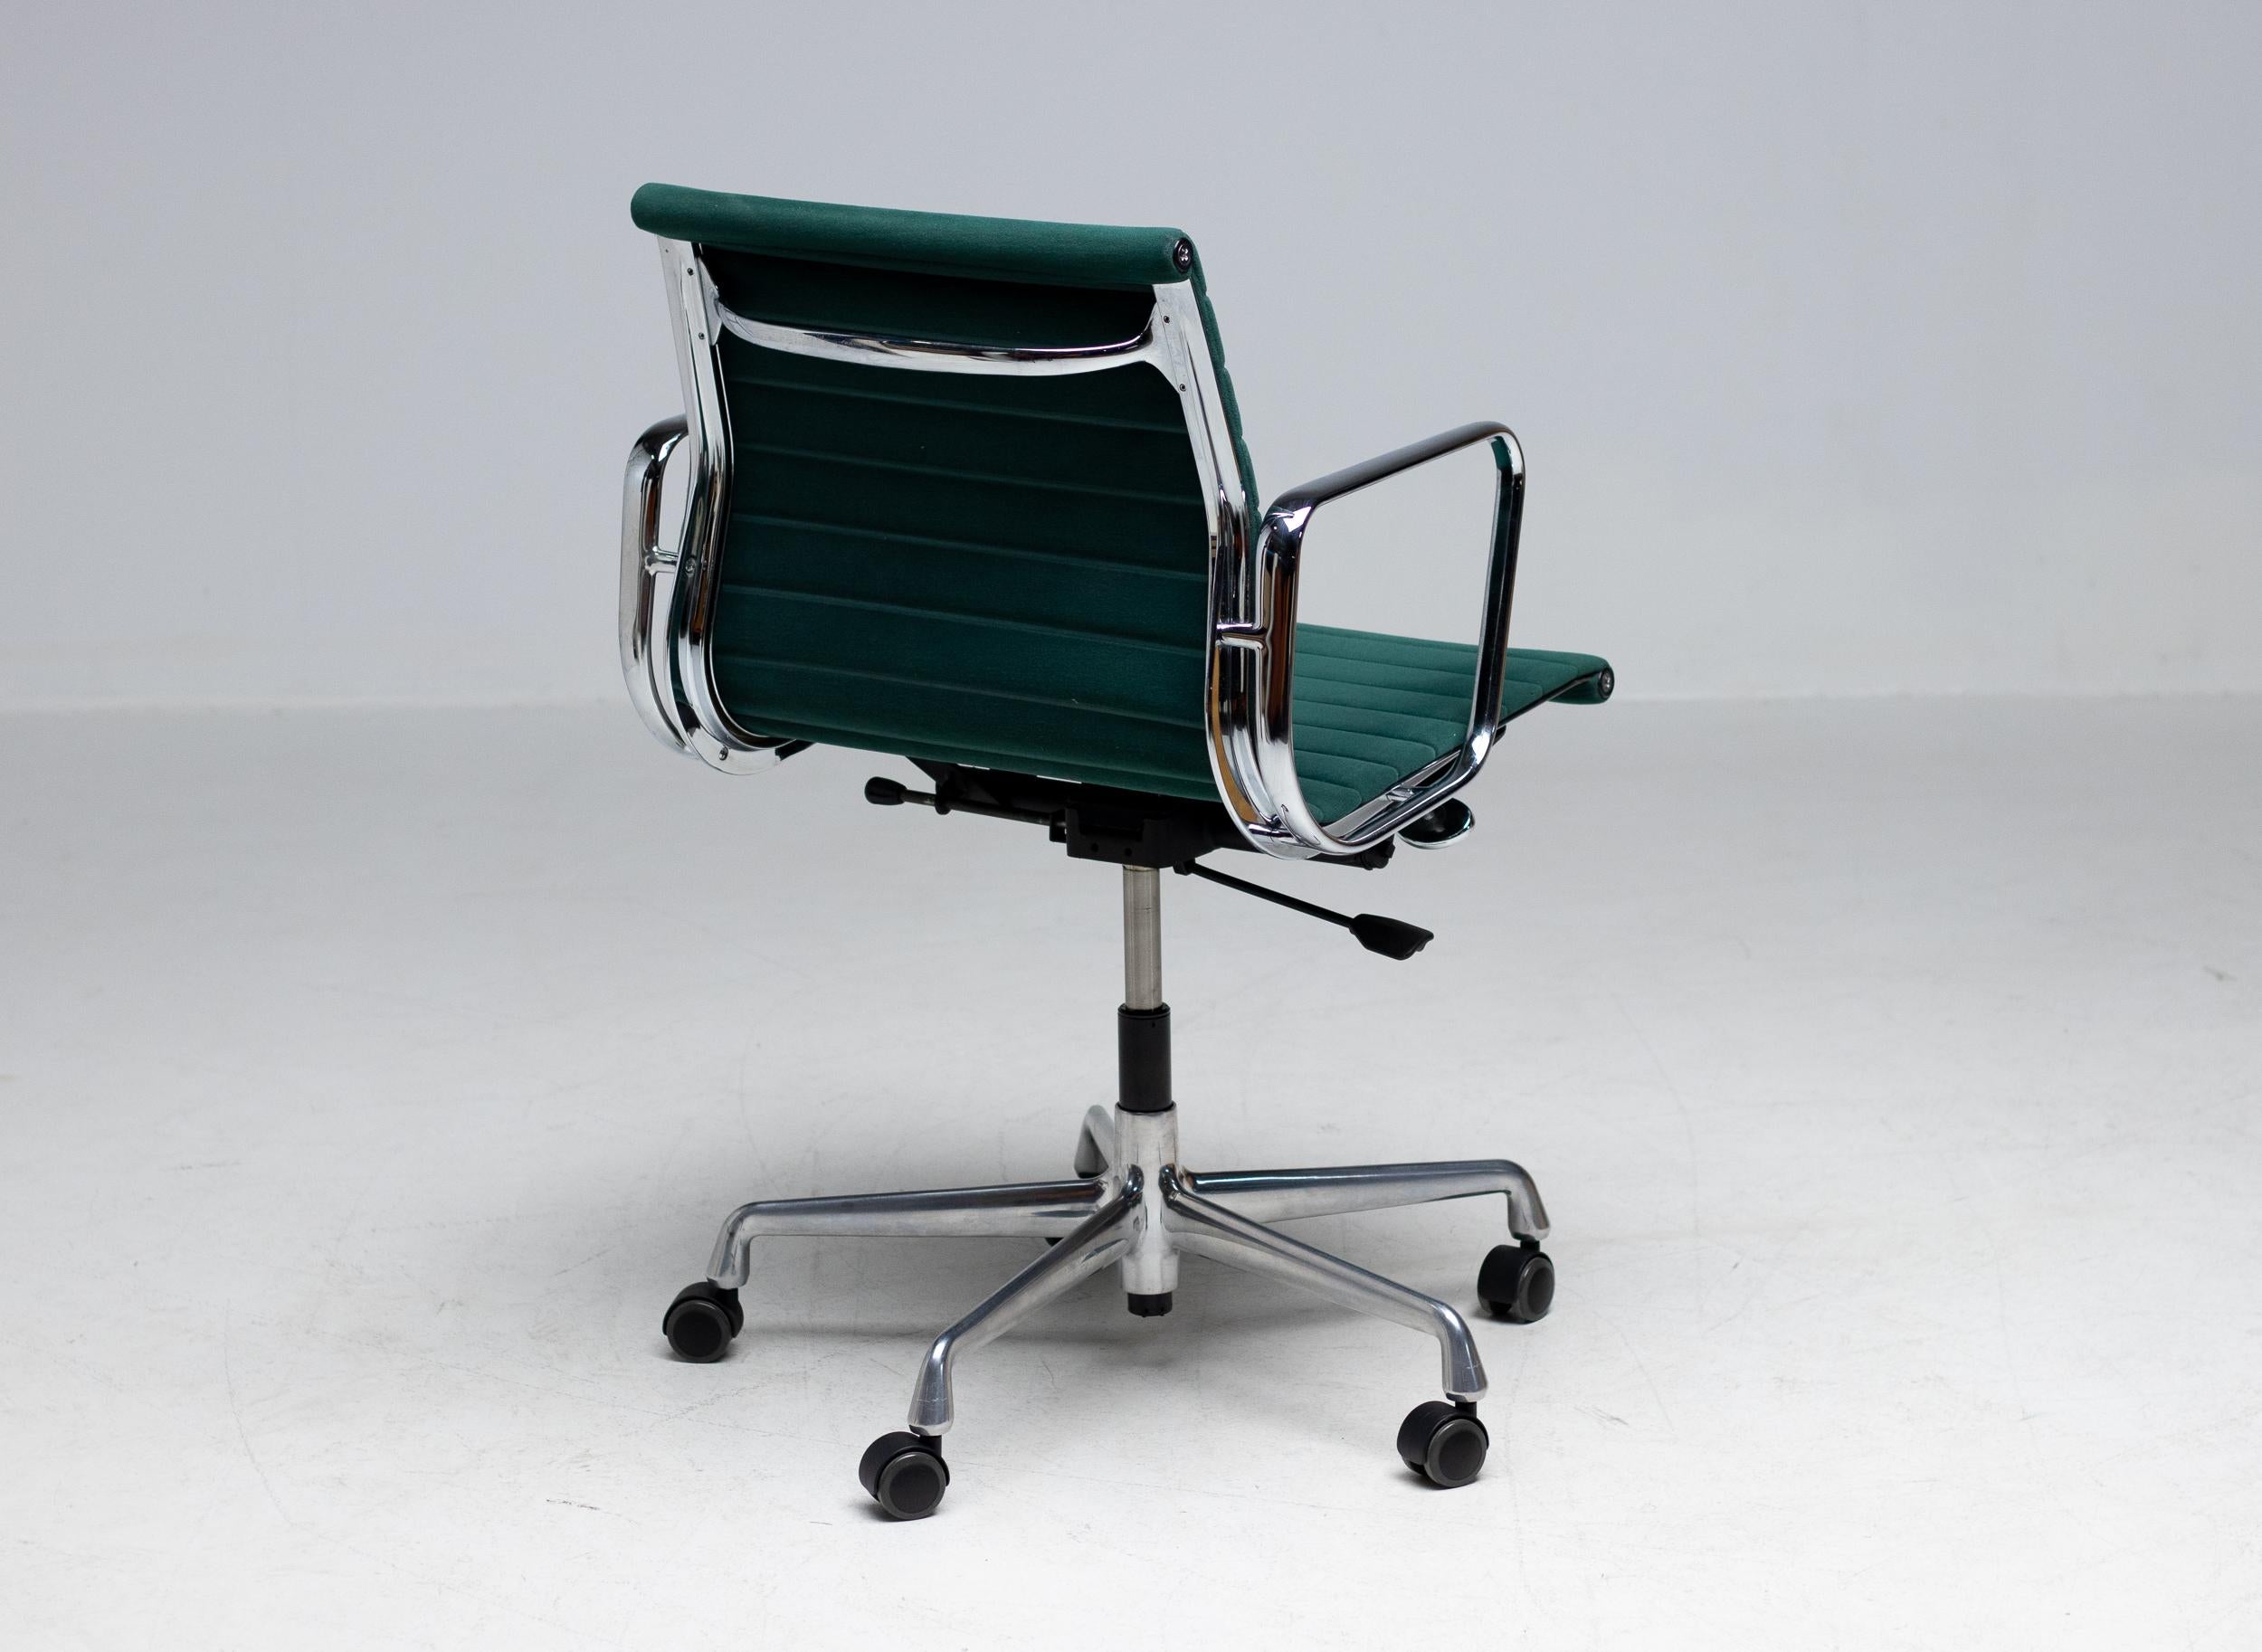 Bürostuhl, Modell EA117, entworfen von Charles und Ray Eames für Vitra / Herman Miller. 
Rückenlehne und Sitz aus sehr seltenem grünem Filz. Gestell, Armlehnen und Fünfsternfuß aus Aluminiumdruckguss. Sitzmechanik mit einstellbarer